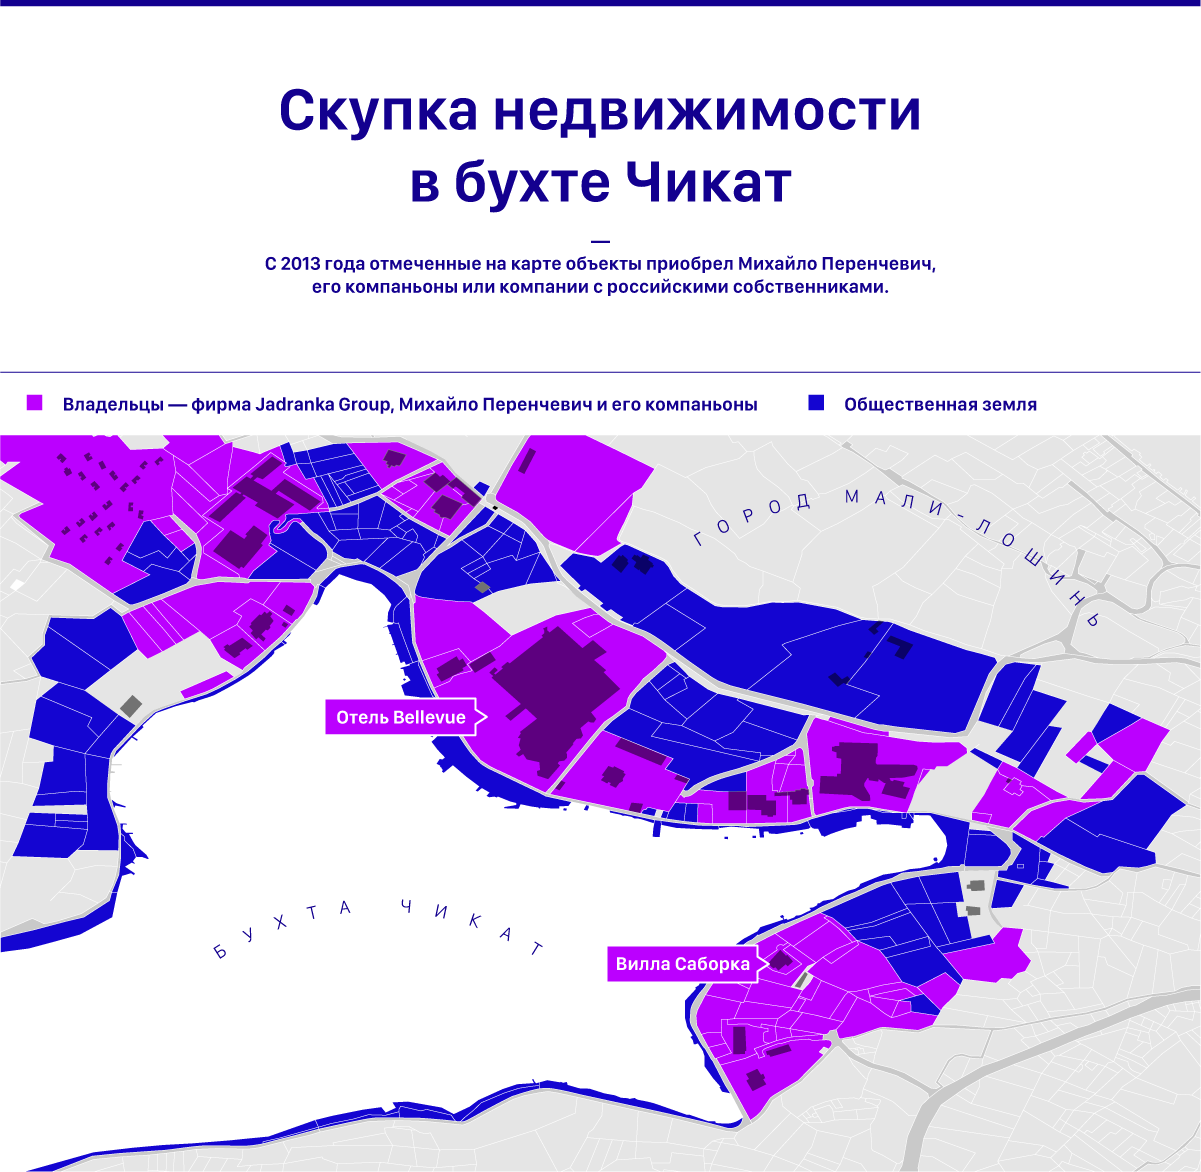 troikalaundromat/cikat-bay-map_ru.png